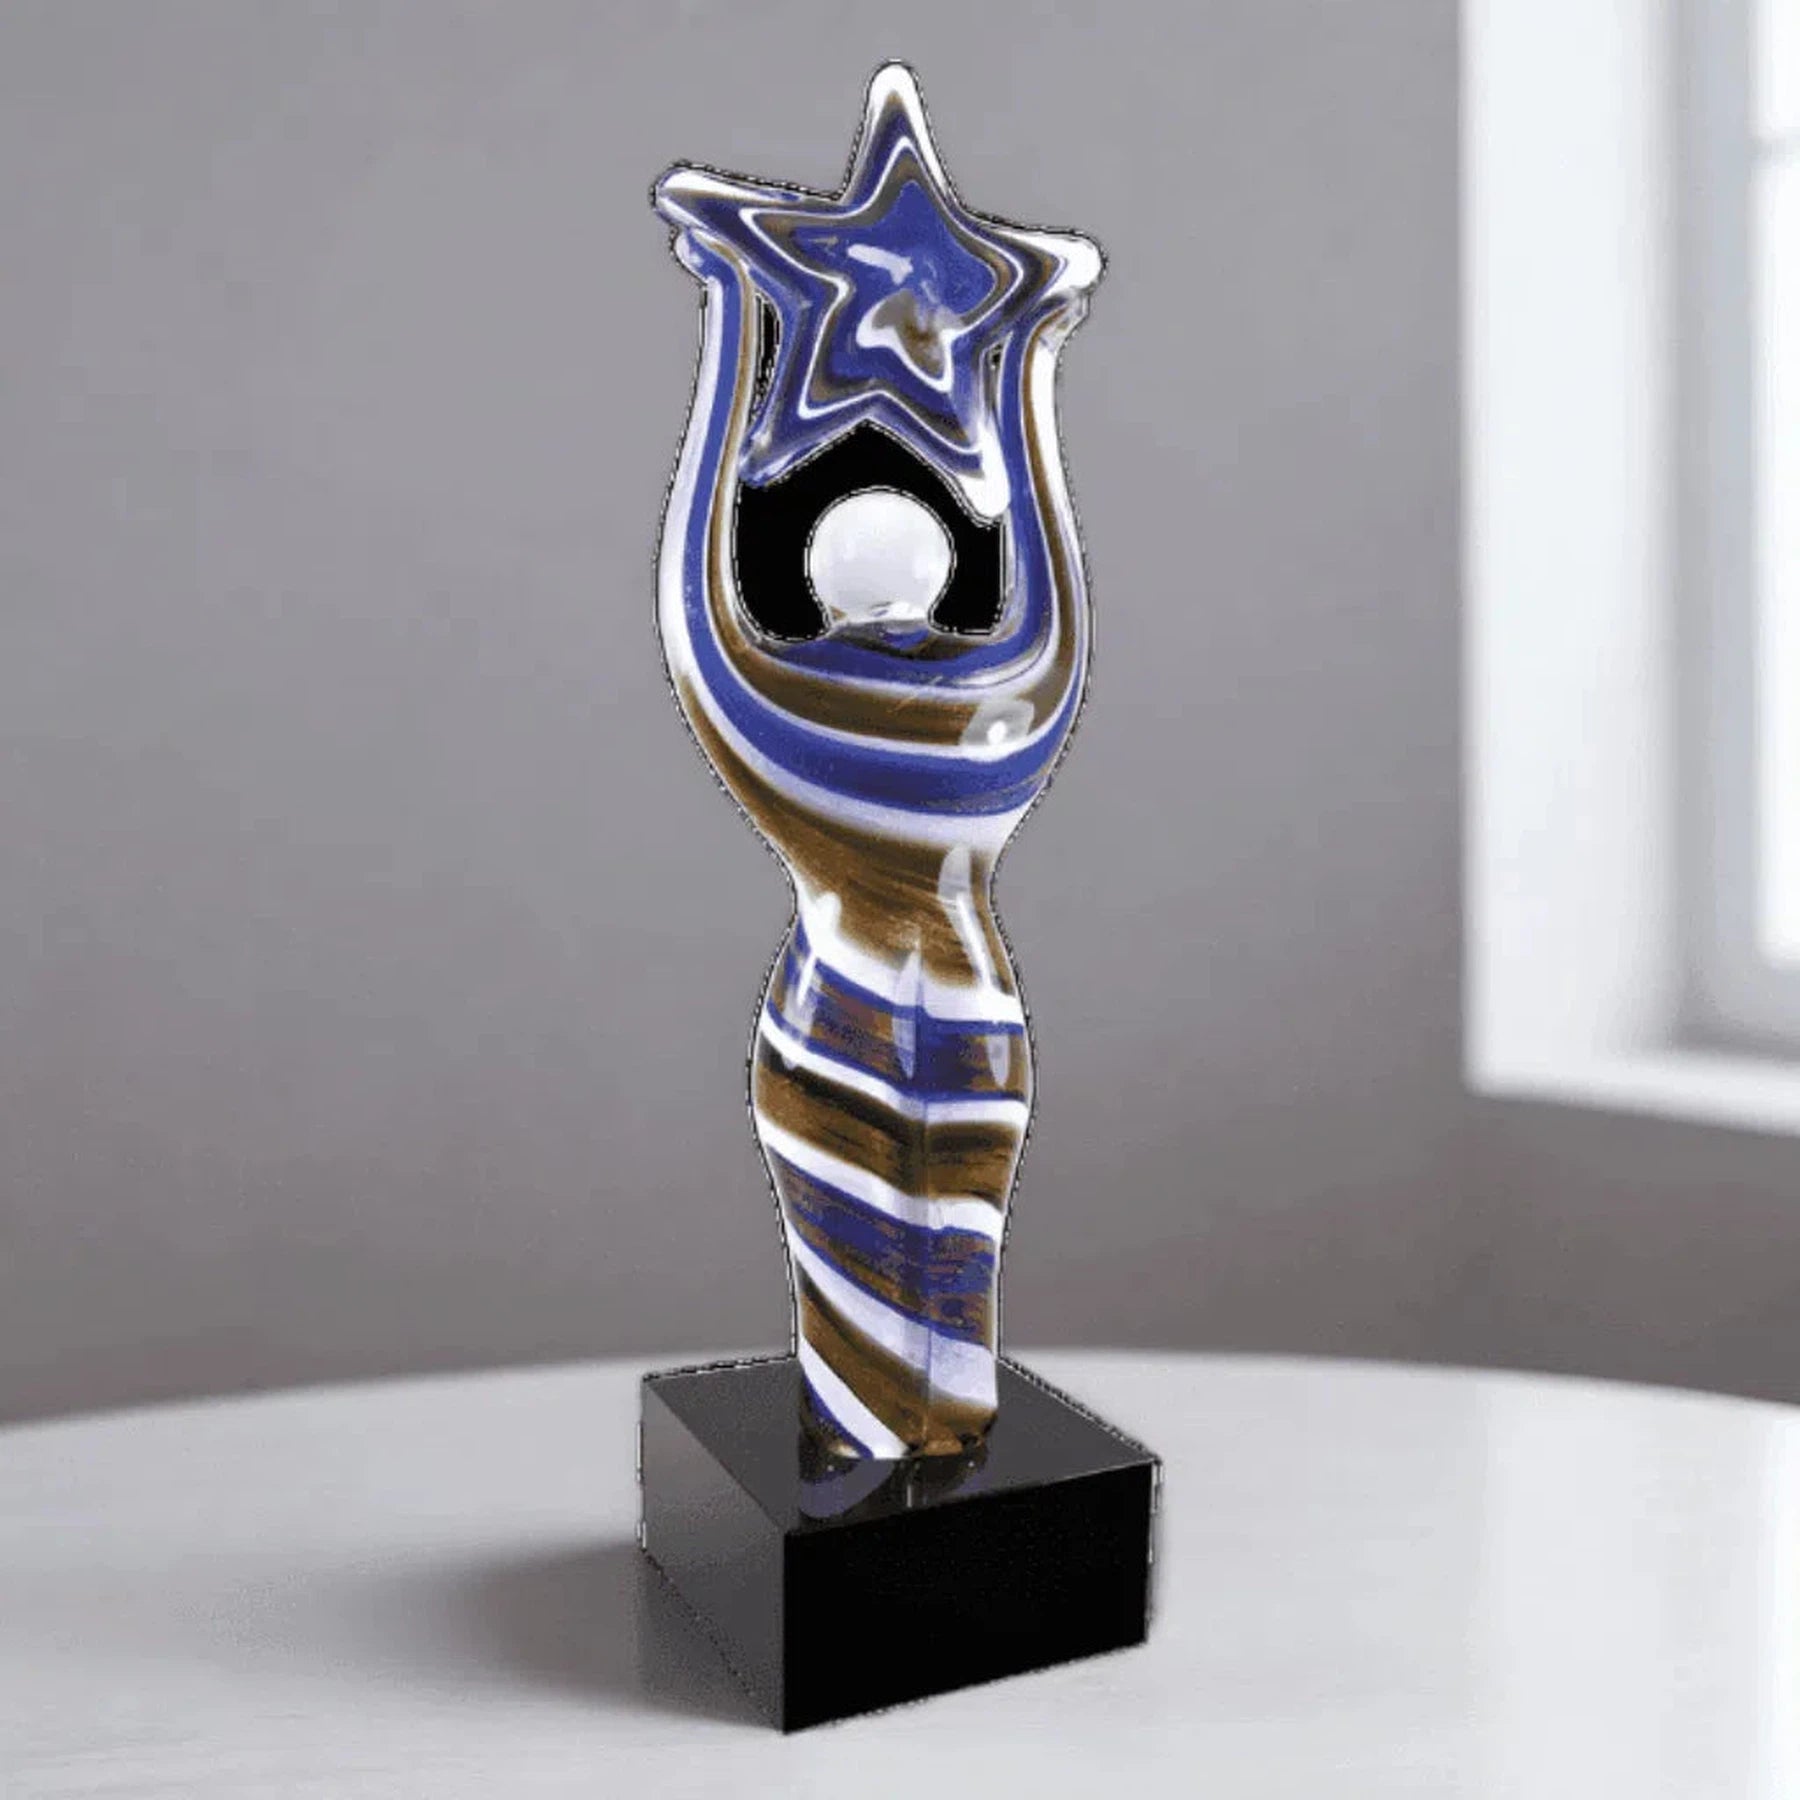 12" Figure with Star Art Glass Award Sculpture